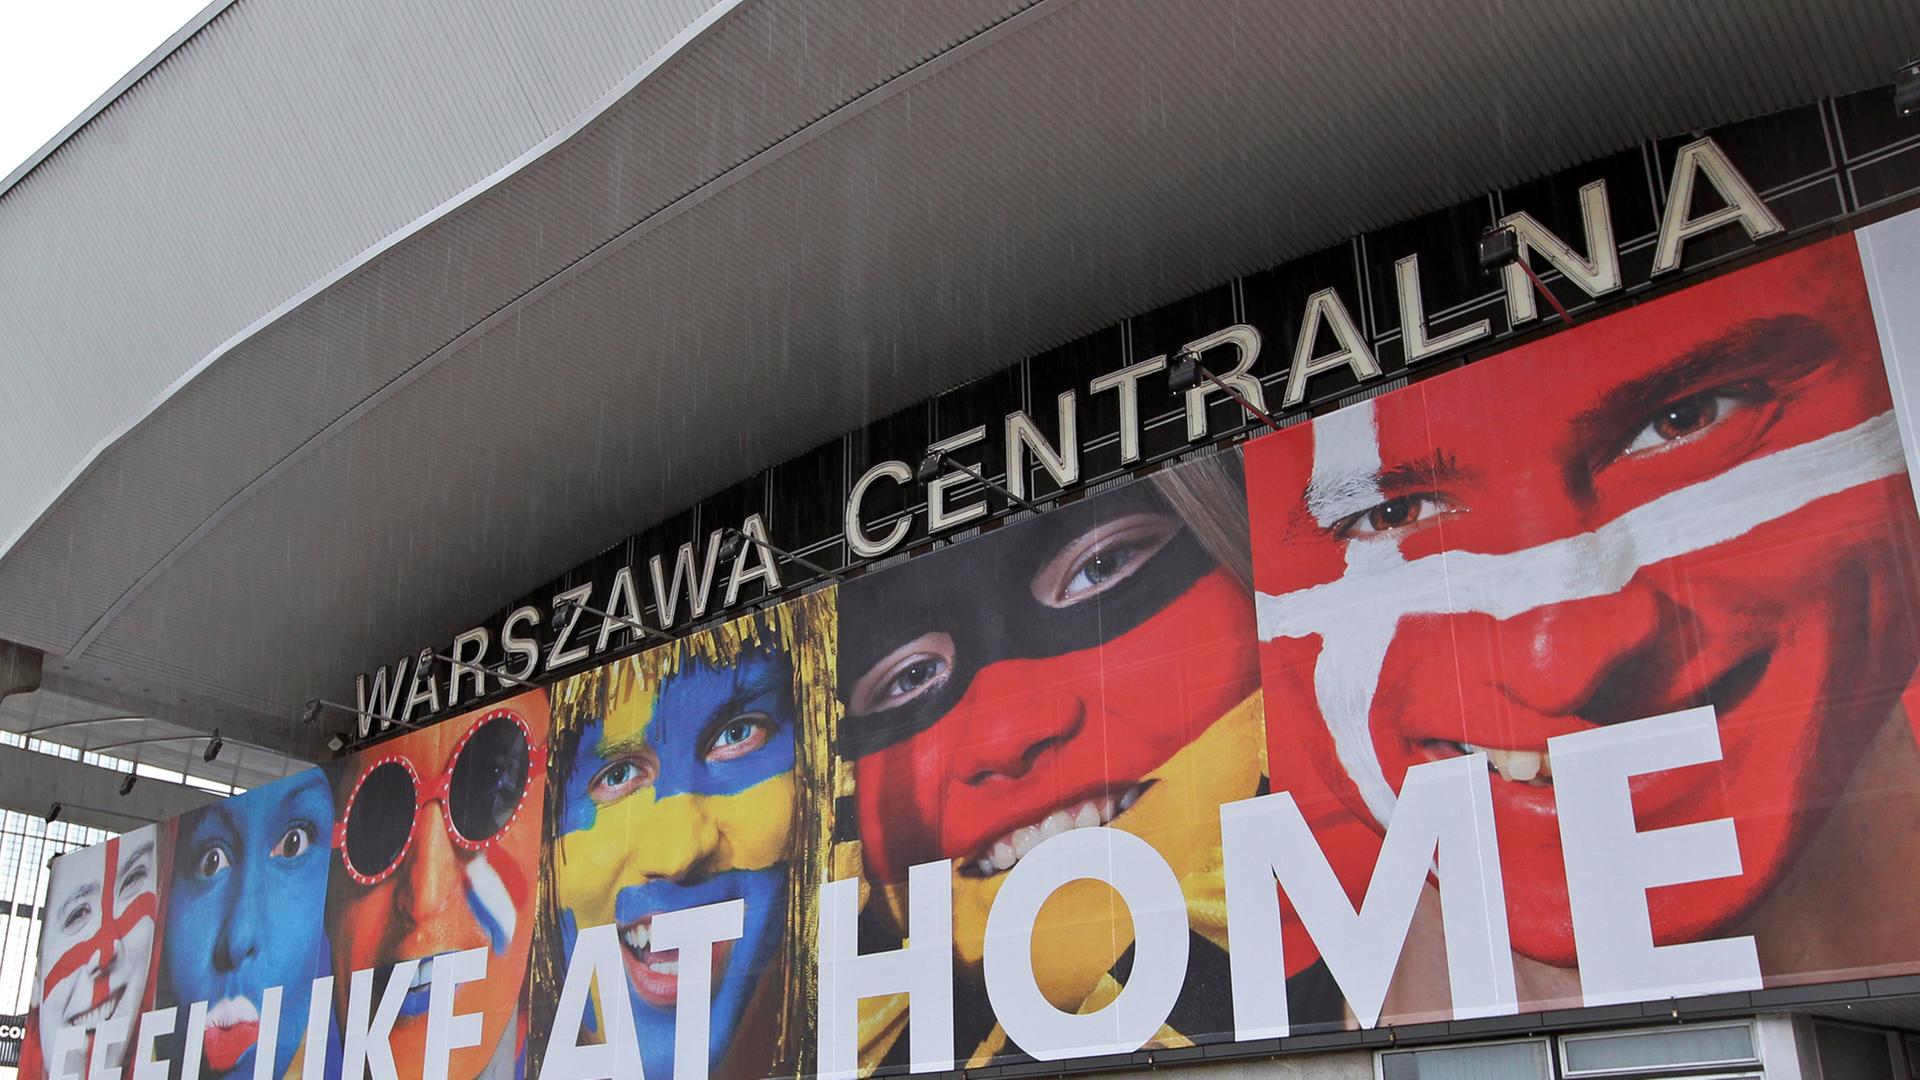 Ein riesiges Poster am Hauptbahnhof von Warschau empfängt Fußballfans aus ganz Europa zur Europameisterschaft 2012. Das Plakat trägt den Schriftzug "Feel like at home" und zeigt Menschen, die ihre Gesichter mit den Nationalflaggen von Teilnehmerländern bemalt haben.